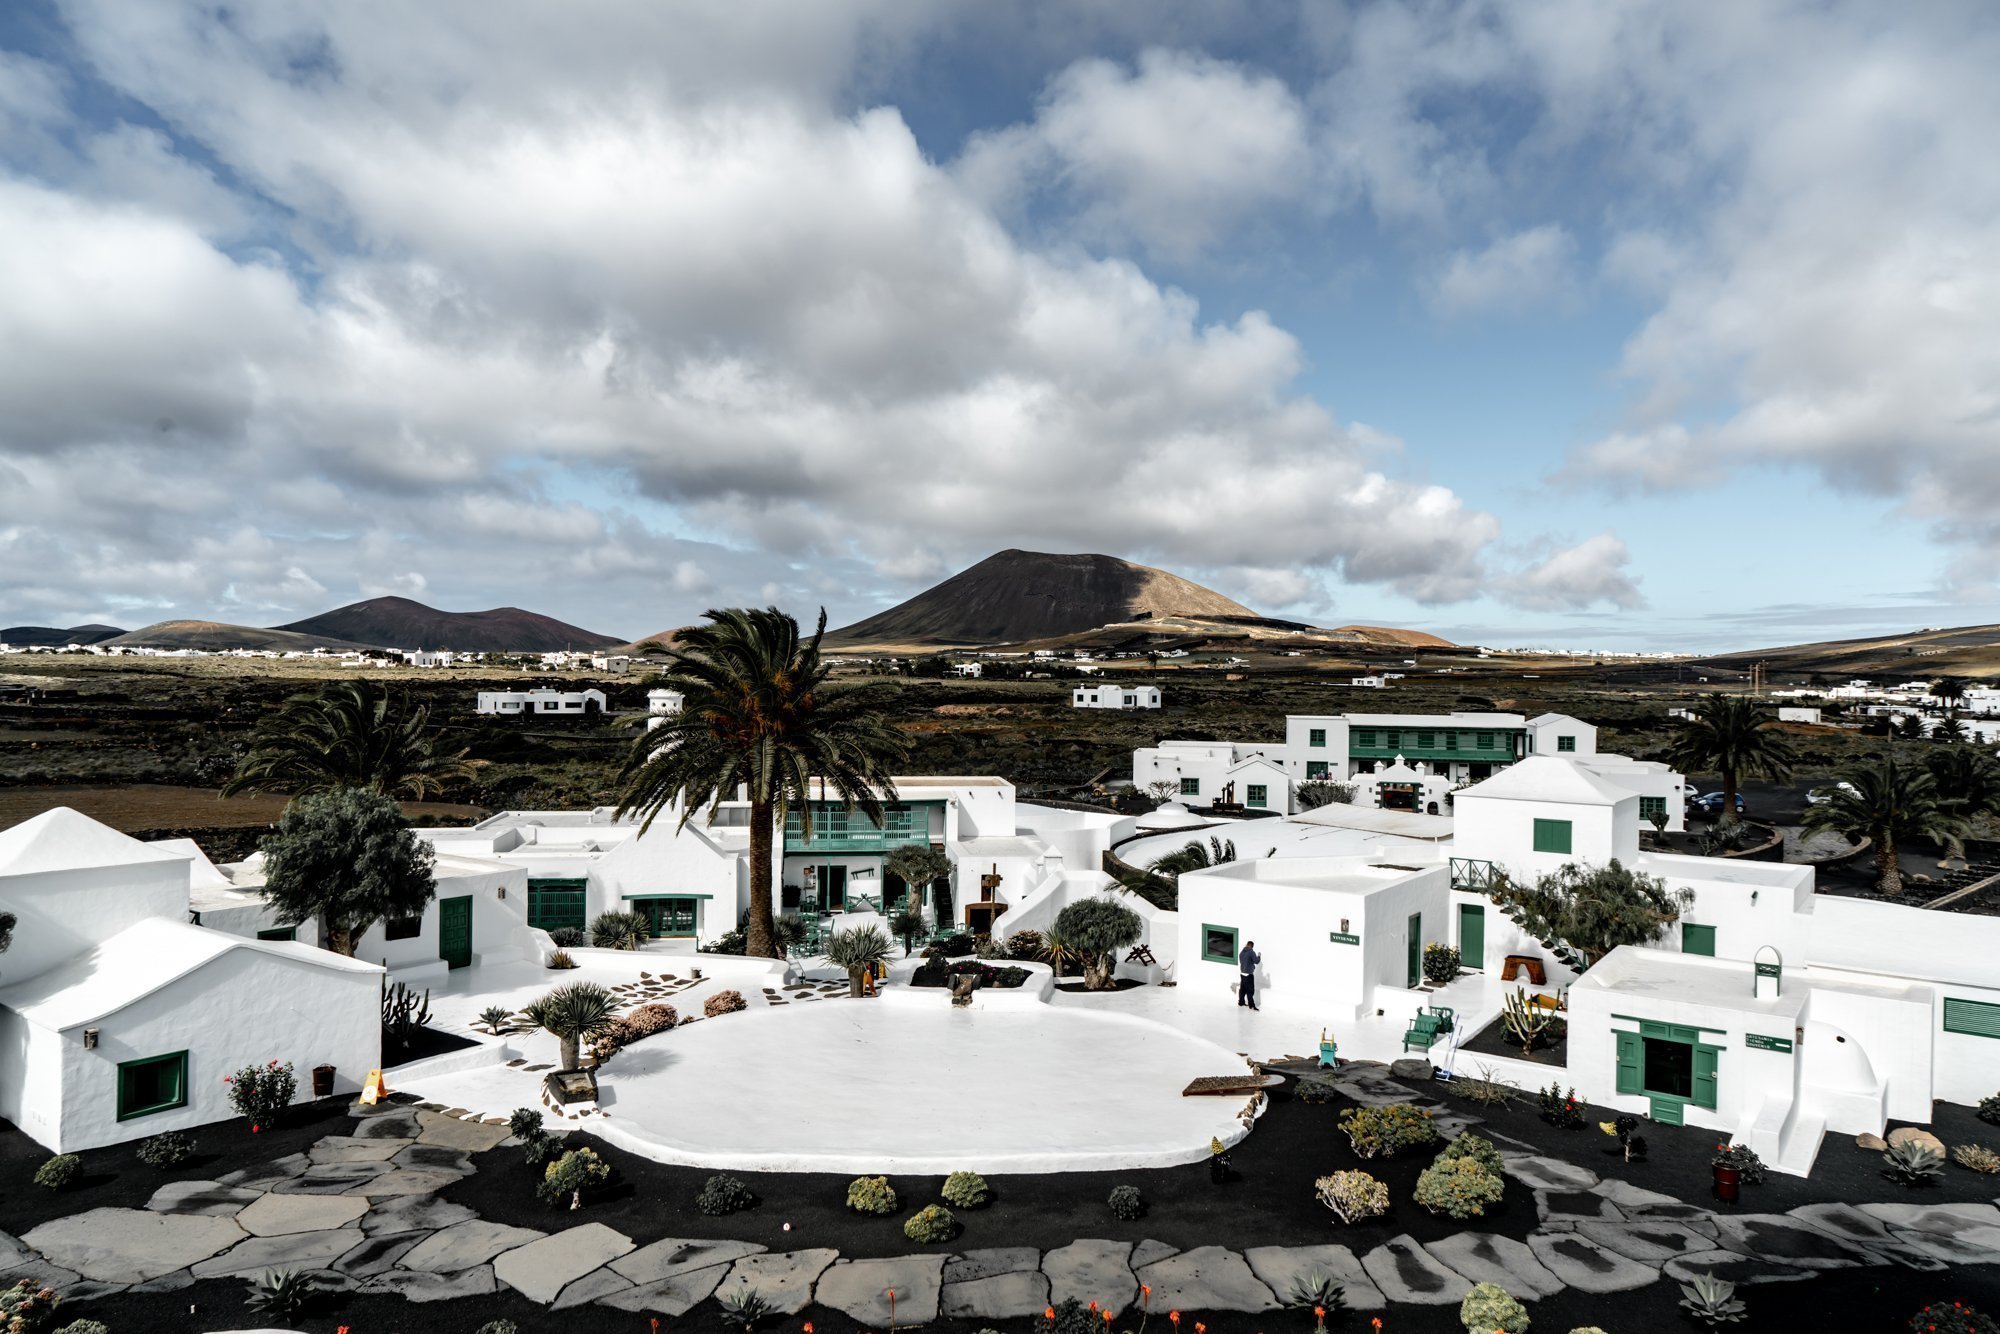 Top Cesar Manrique attractions in Lanzarote 1